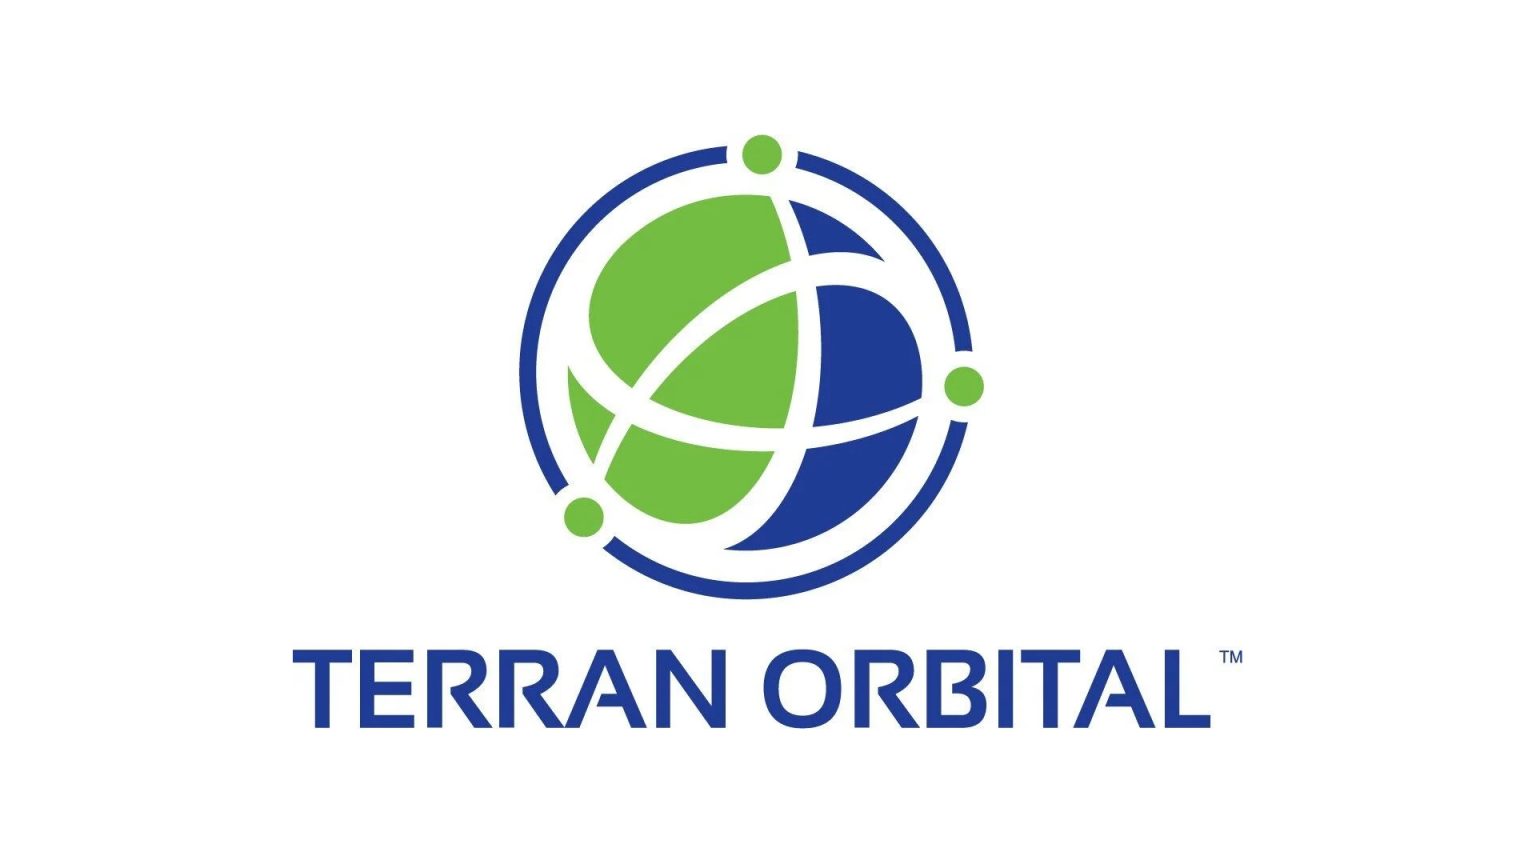 Terran orbital (LLAP)